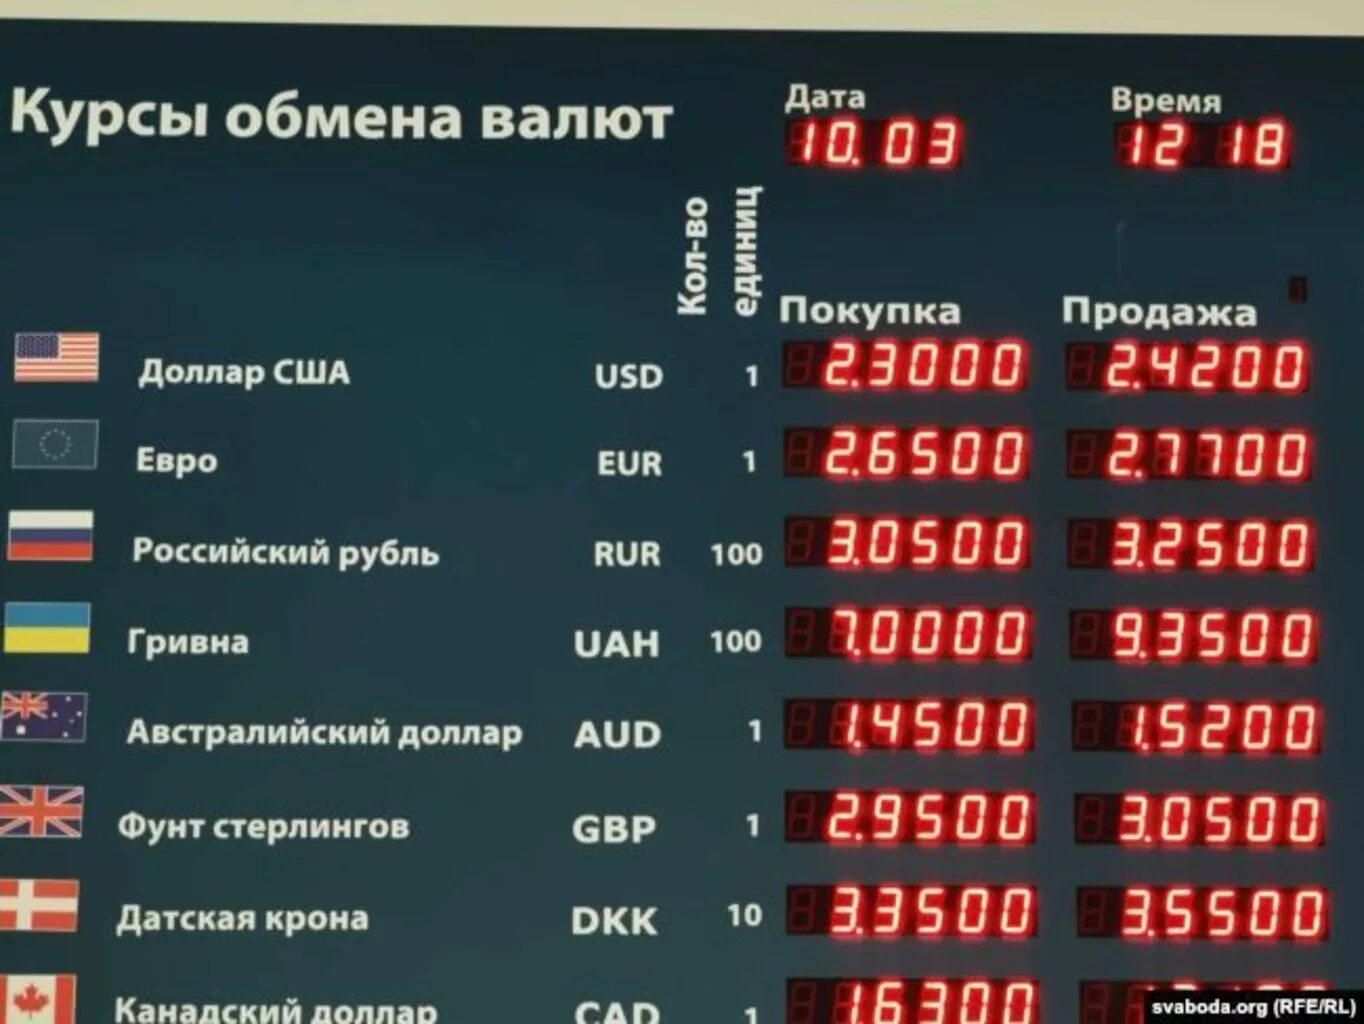 Белорусский банк валюты. Курс курс. Курсы валют. Курс доллара. Курсы валют на сегодня.